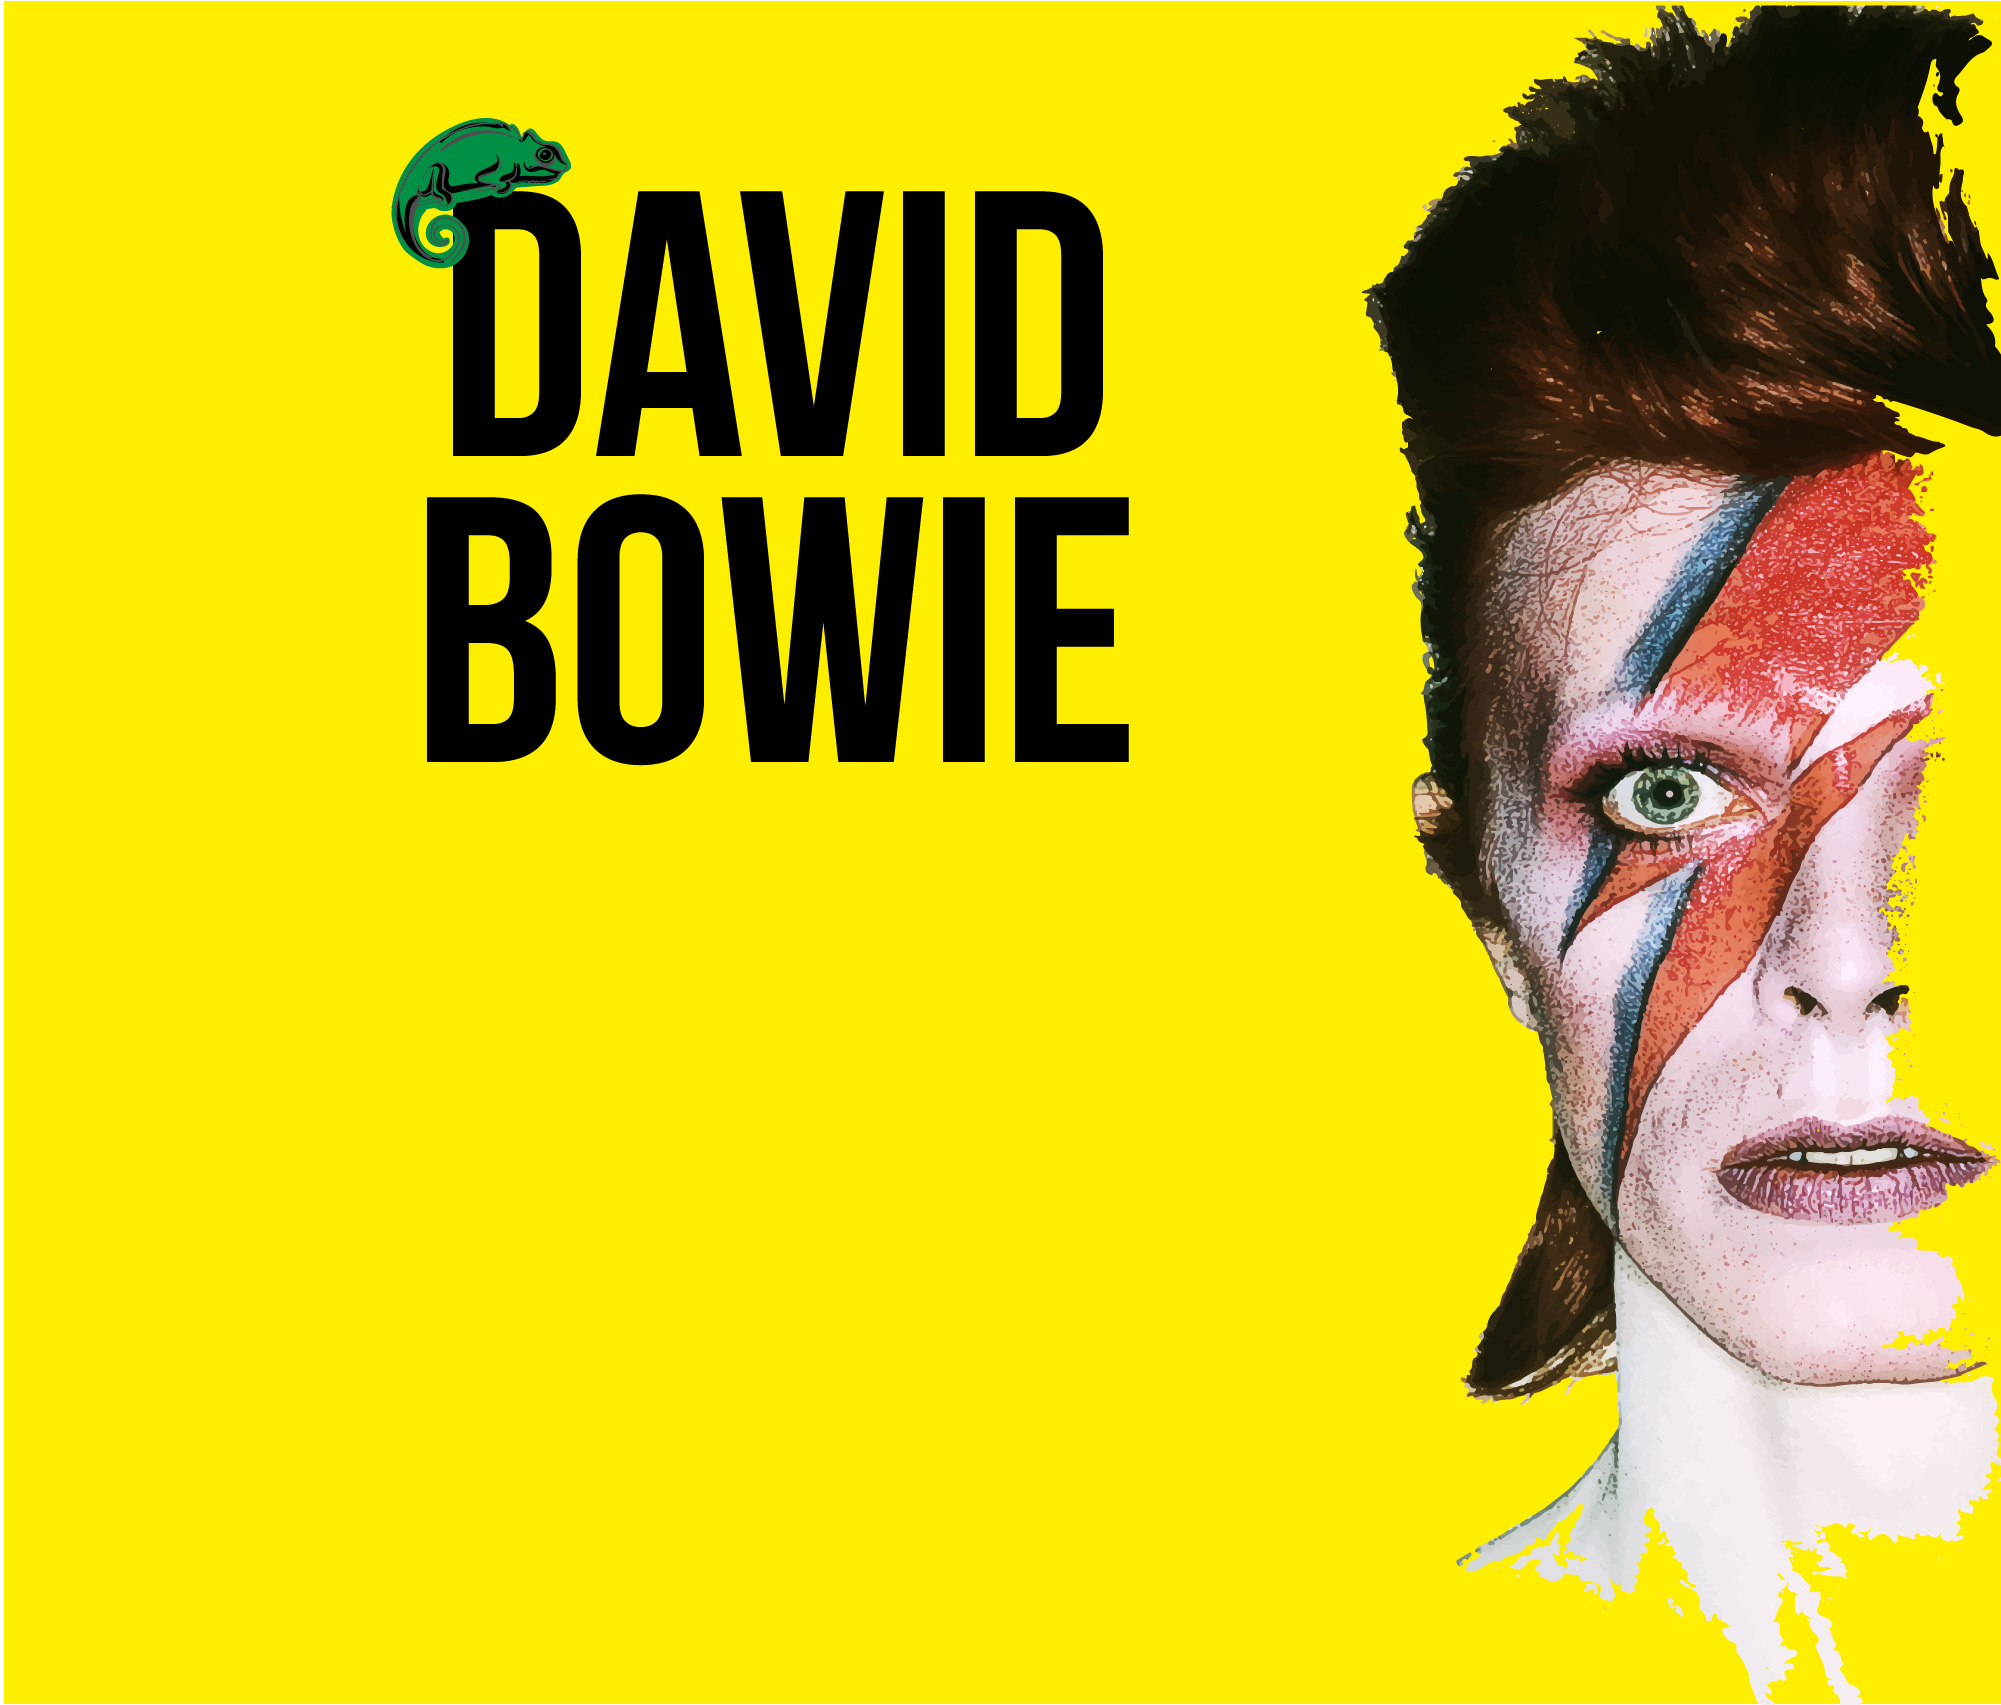 Usted debe visitar la exposición dedicada a "David Bowie"